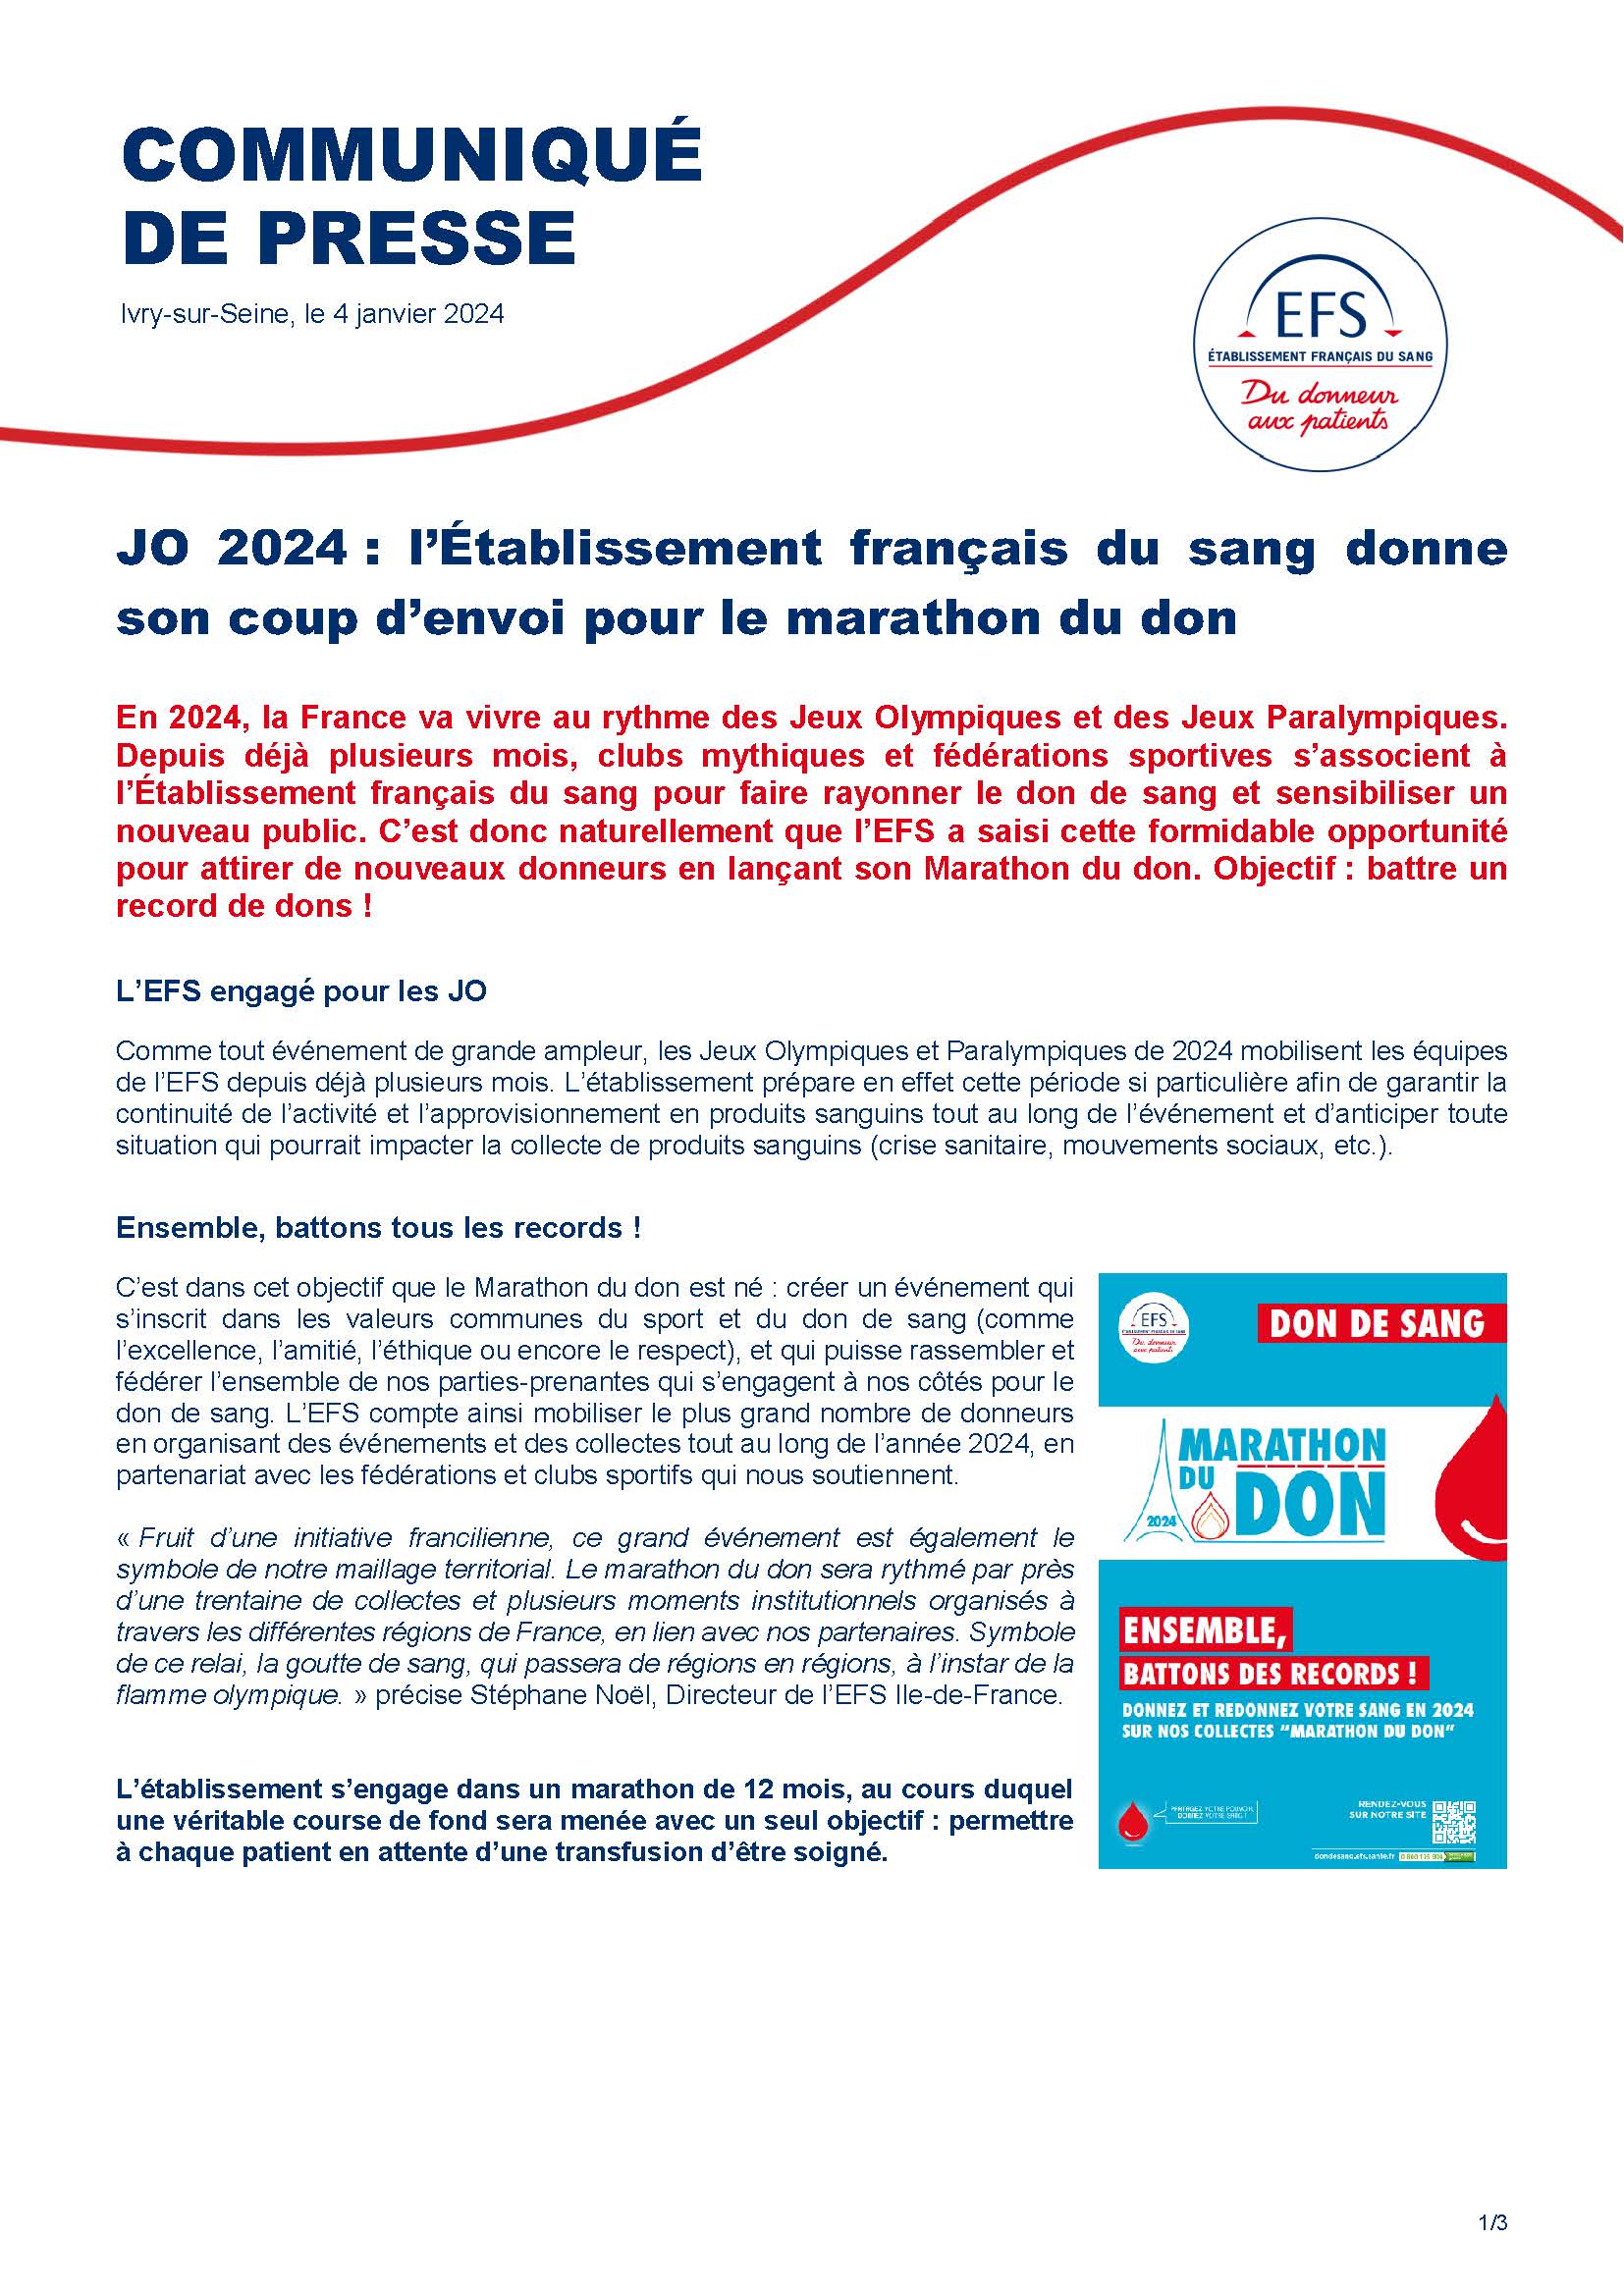 CP_Lancement du Marathon du don_VF_IDF_Page_1.jpg